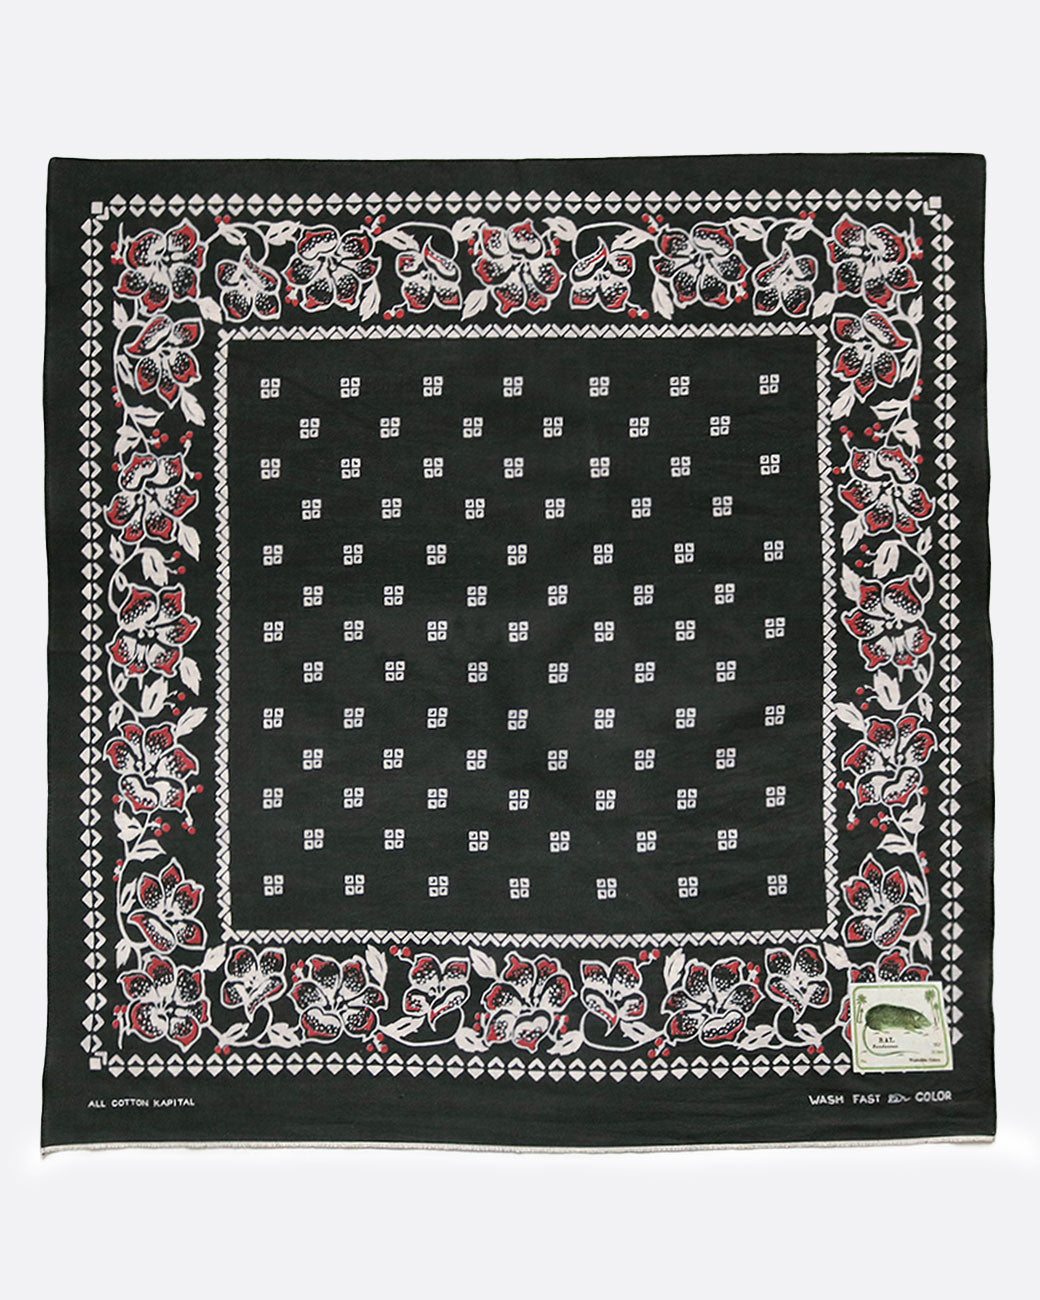 Kapital amazon lily bandana in black, shown laying flat.